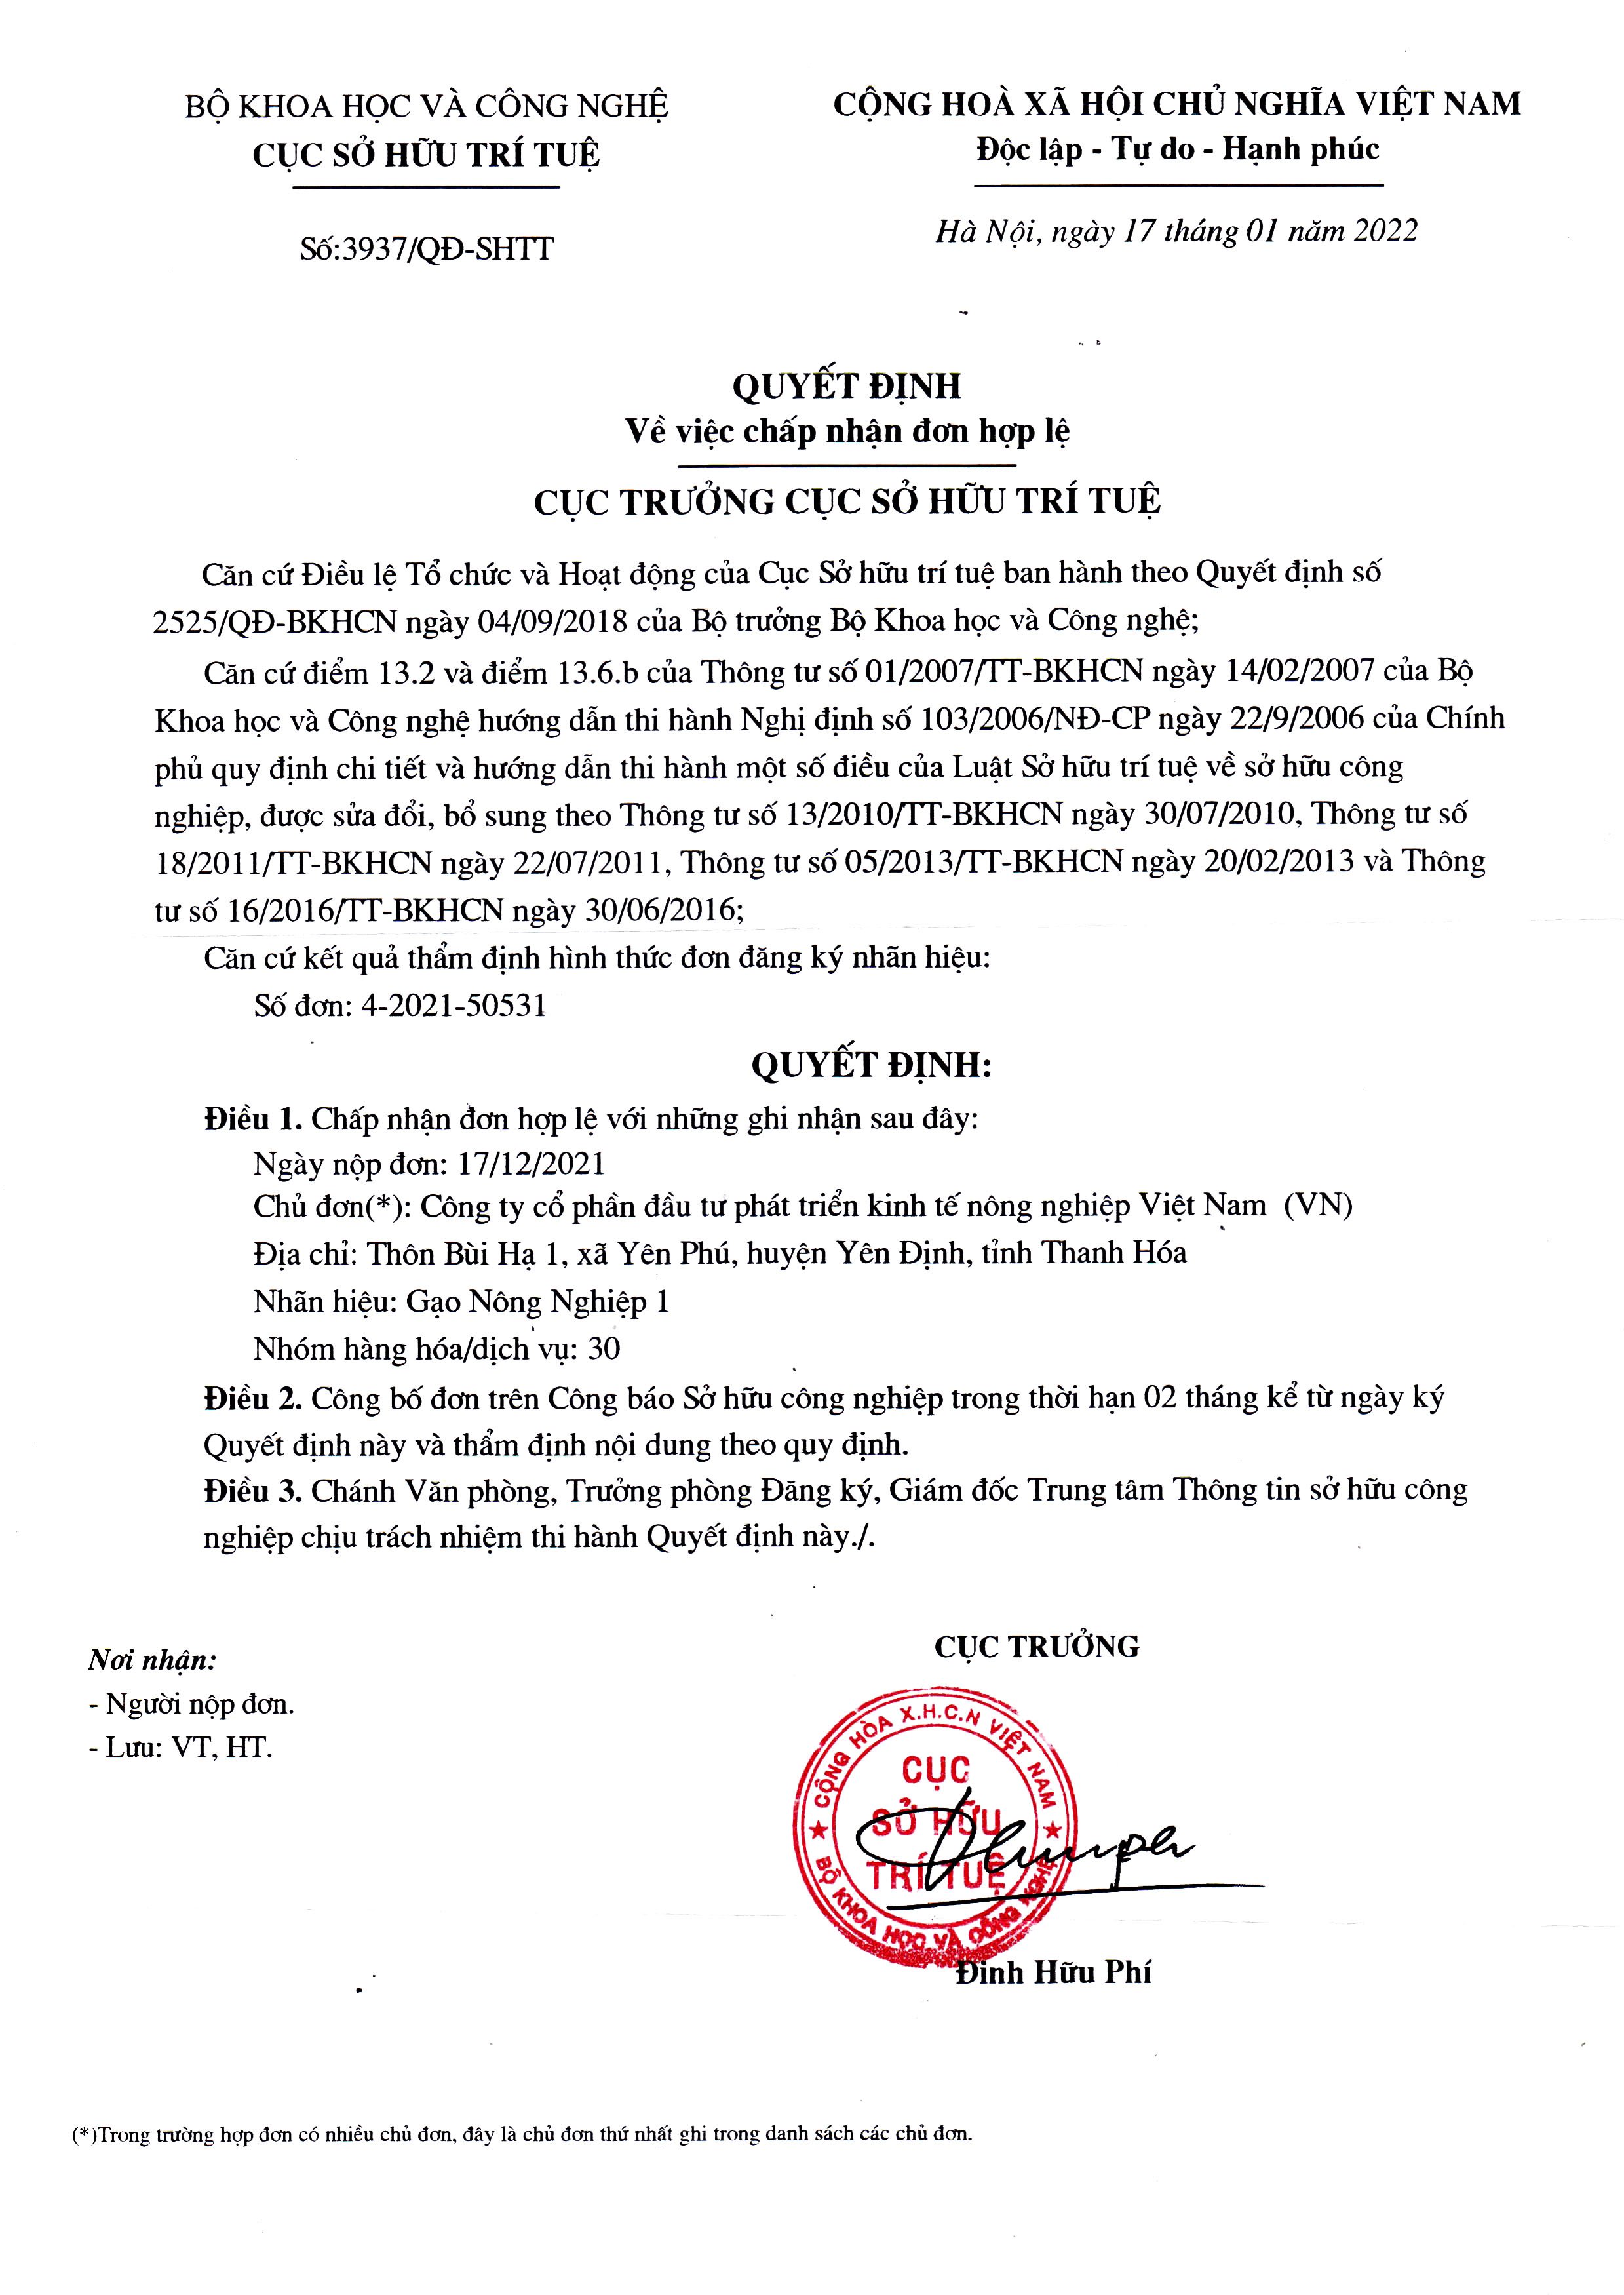 Quyết định của Cục trưởng Cục sở hữu trí tuệ về việc chấp nhận đơn hợp lệ của Công ty Cổ phần Đầu tư Phát triển Kinh tế Nông nghiệp Việt Nam